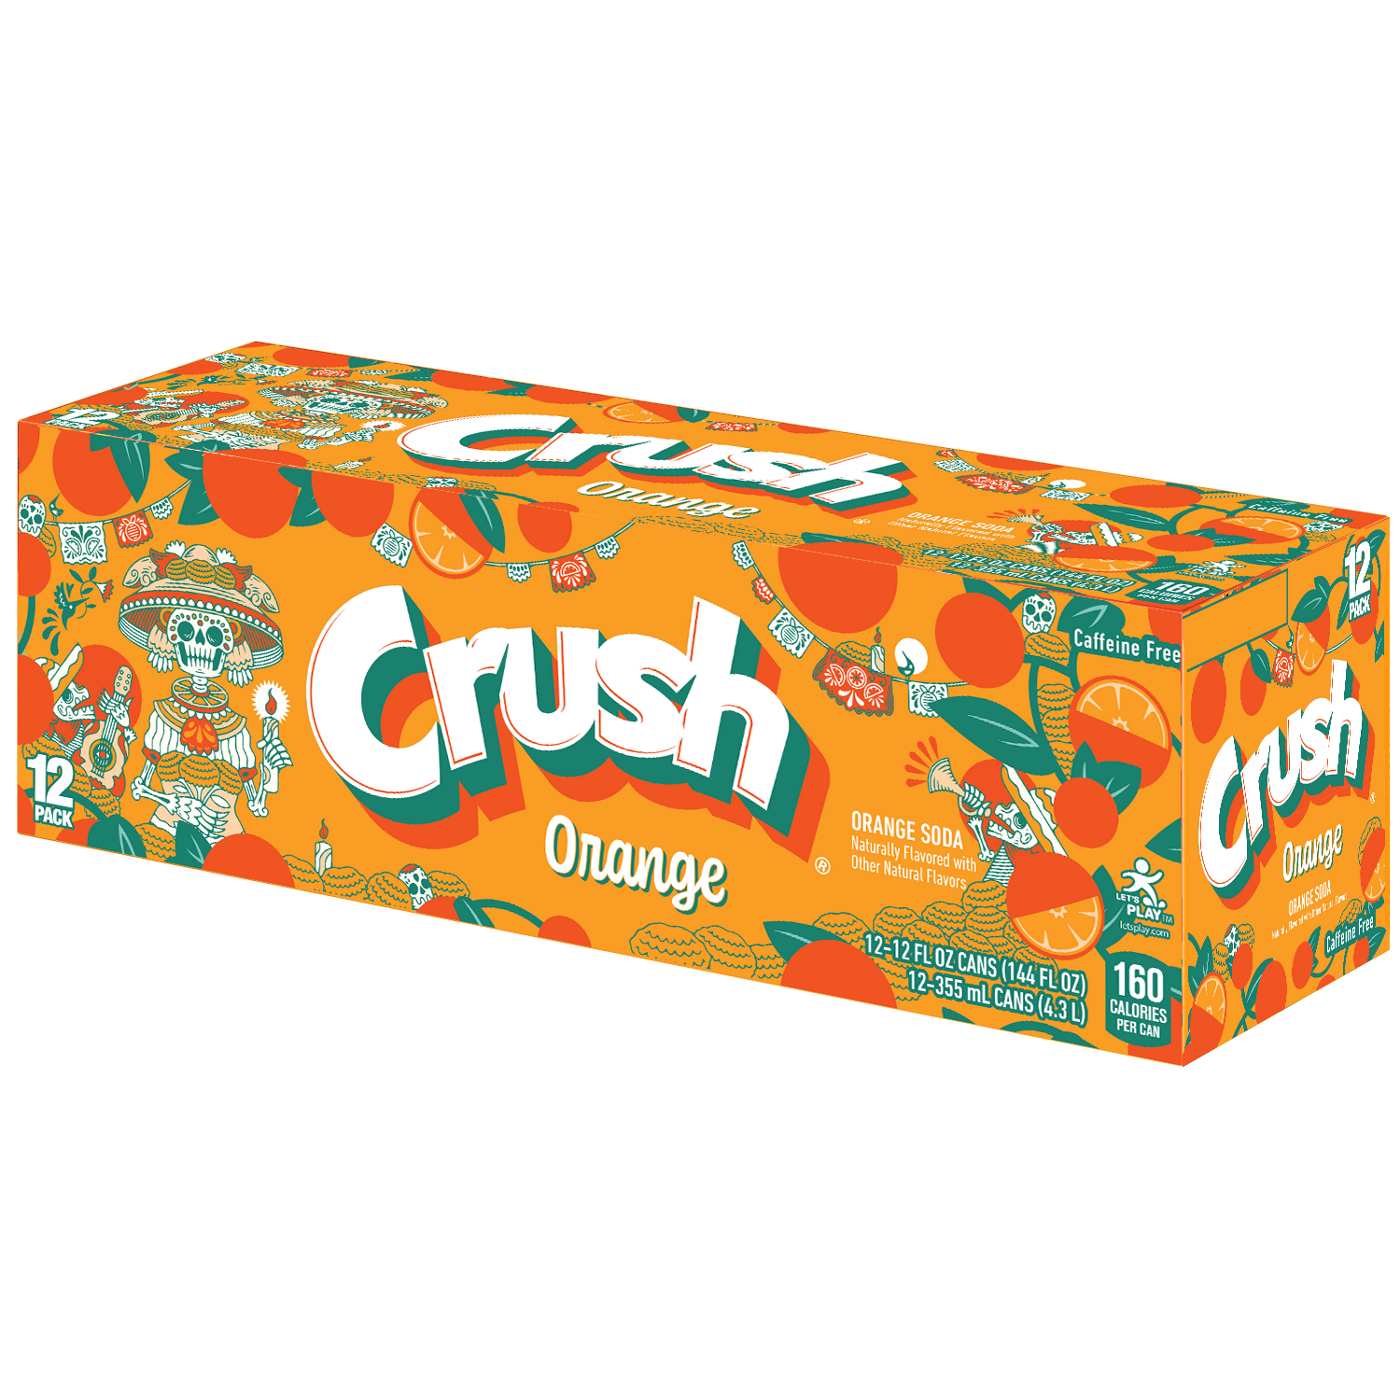 Crush Orange Soda 12 pk Cans; image 1 of 3